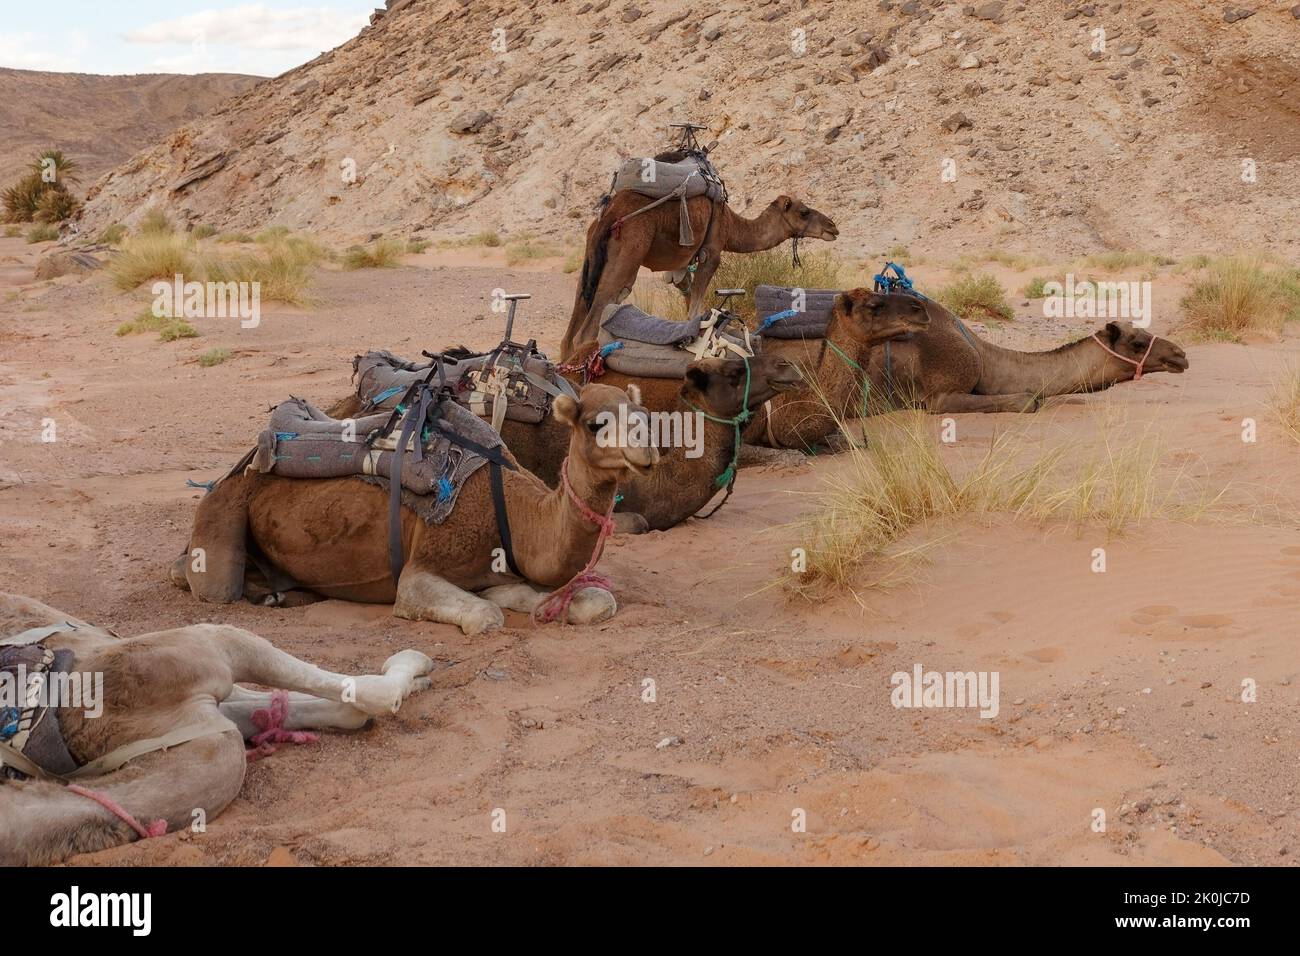 Chameaux reposant sur le sable dans le désert du Sahara. Maroc Banque D'Images